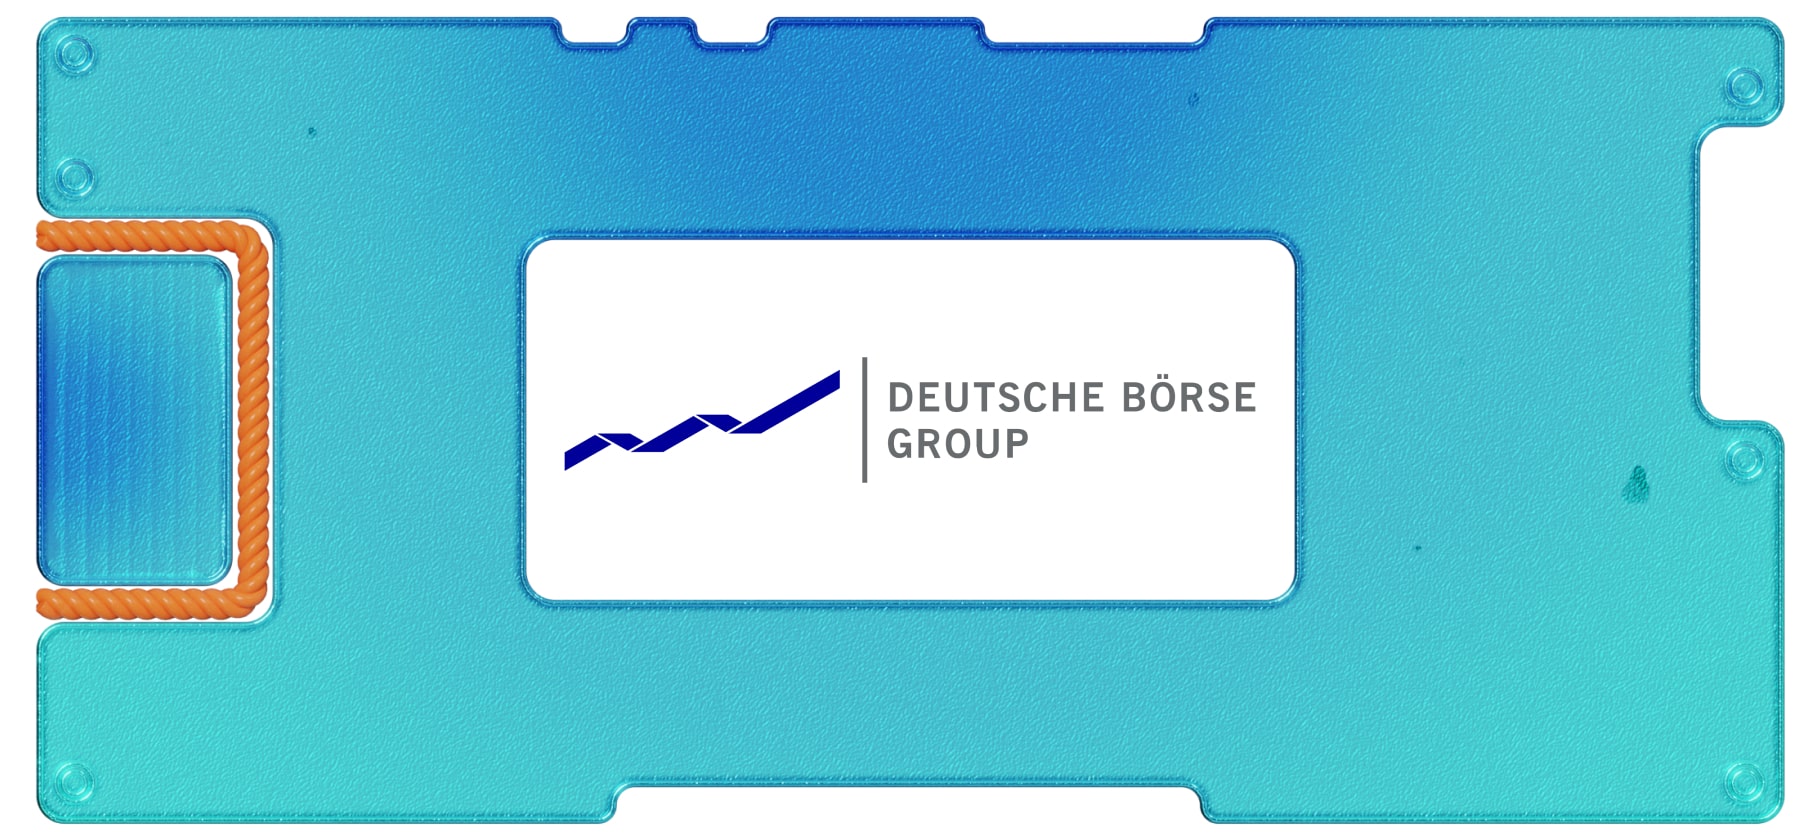 Брексит, деривативы и инвестирование: как устроен бизнес Deutsche Börse